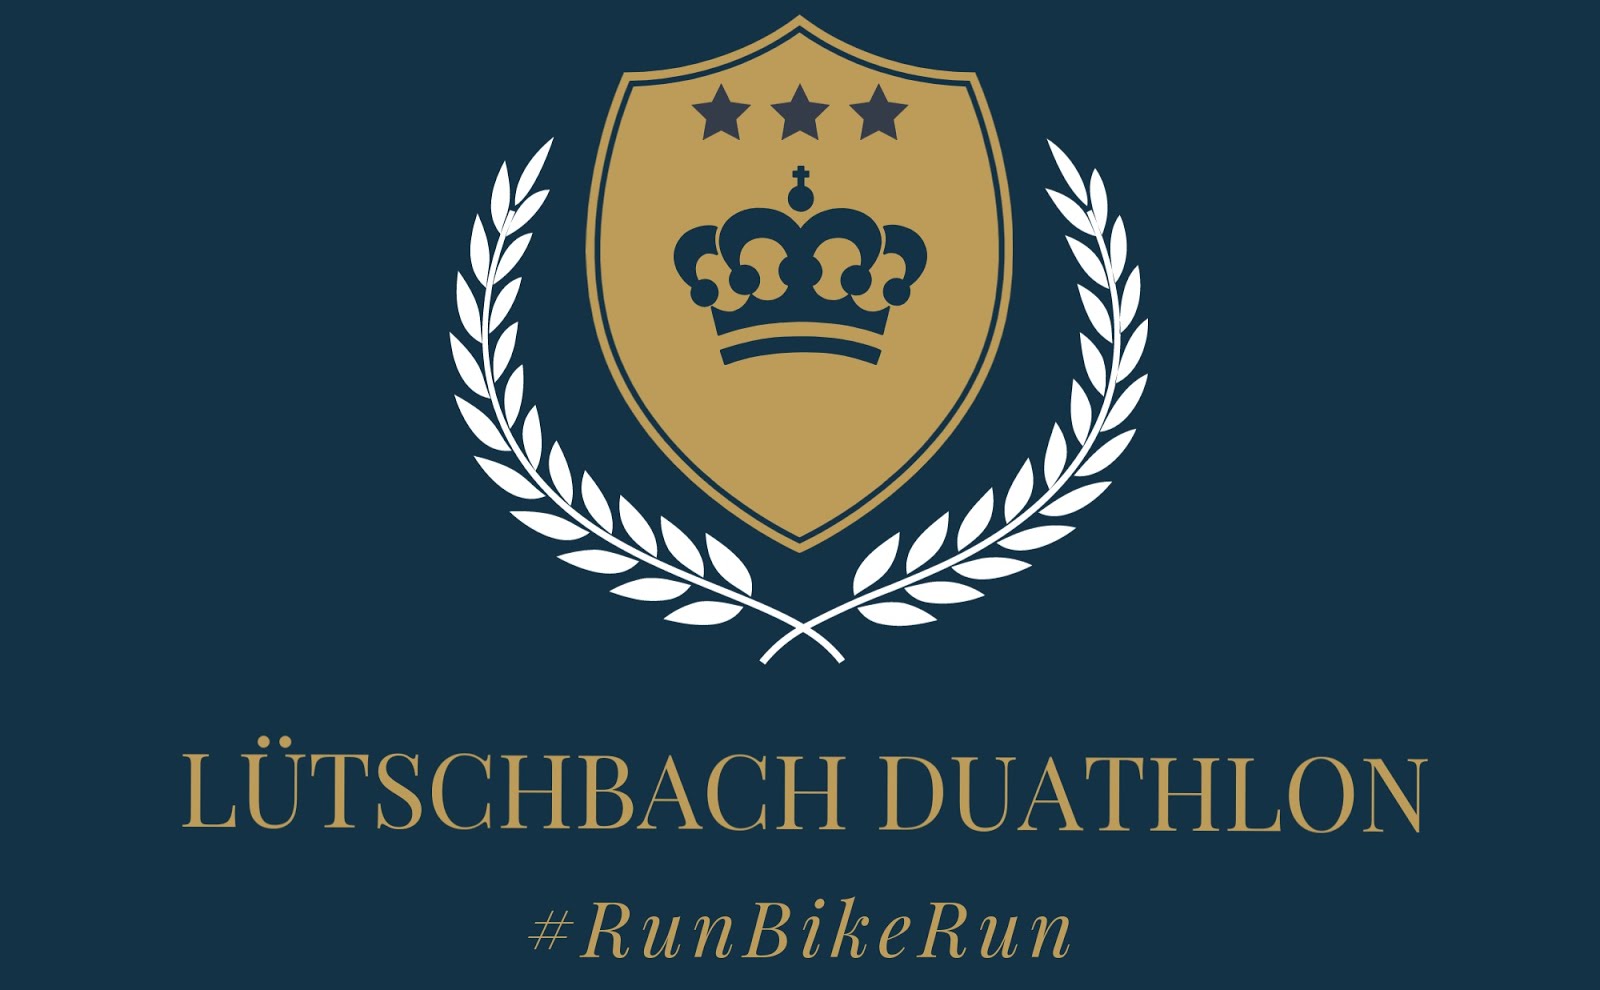 Lütschbach Duathlon